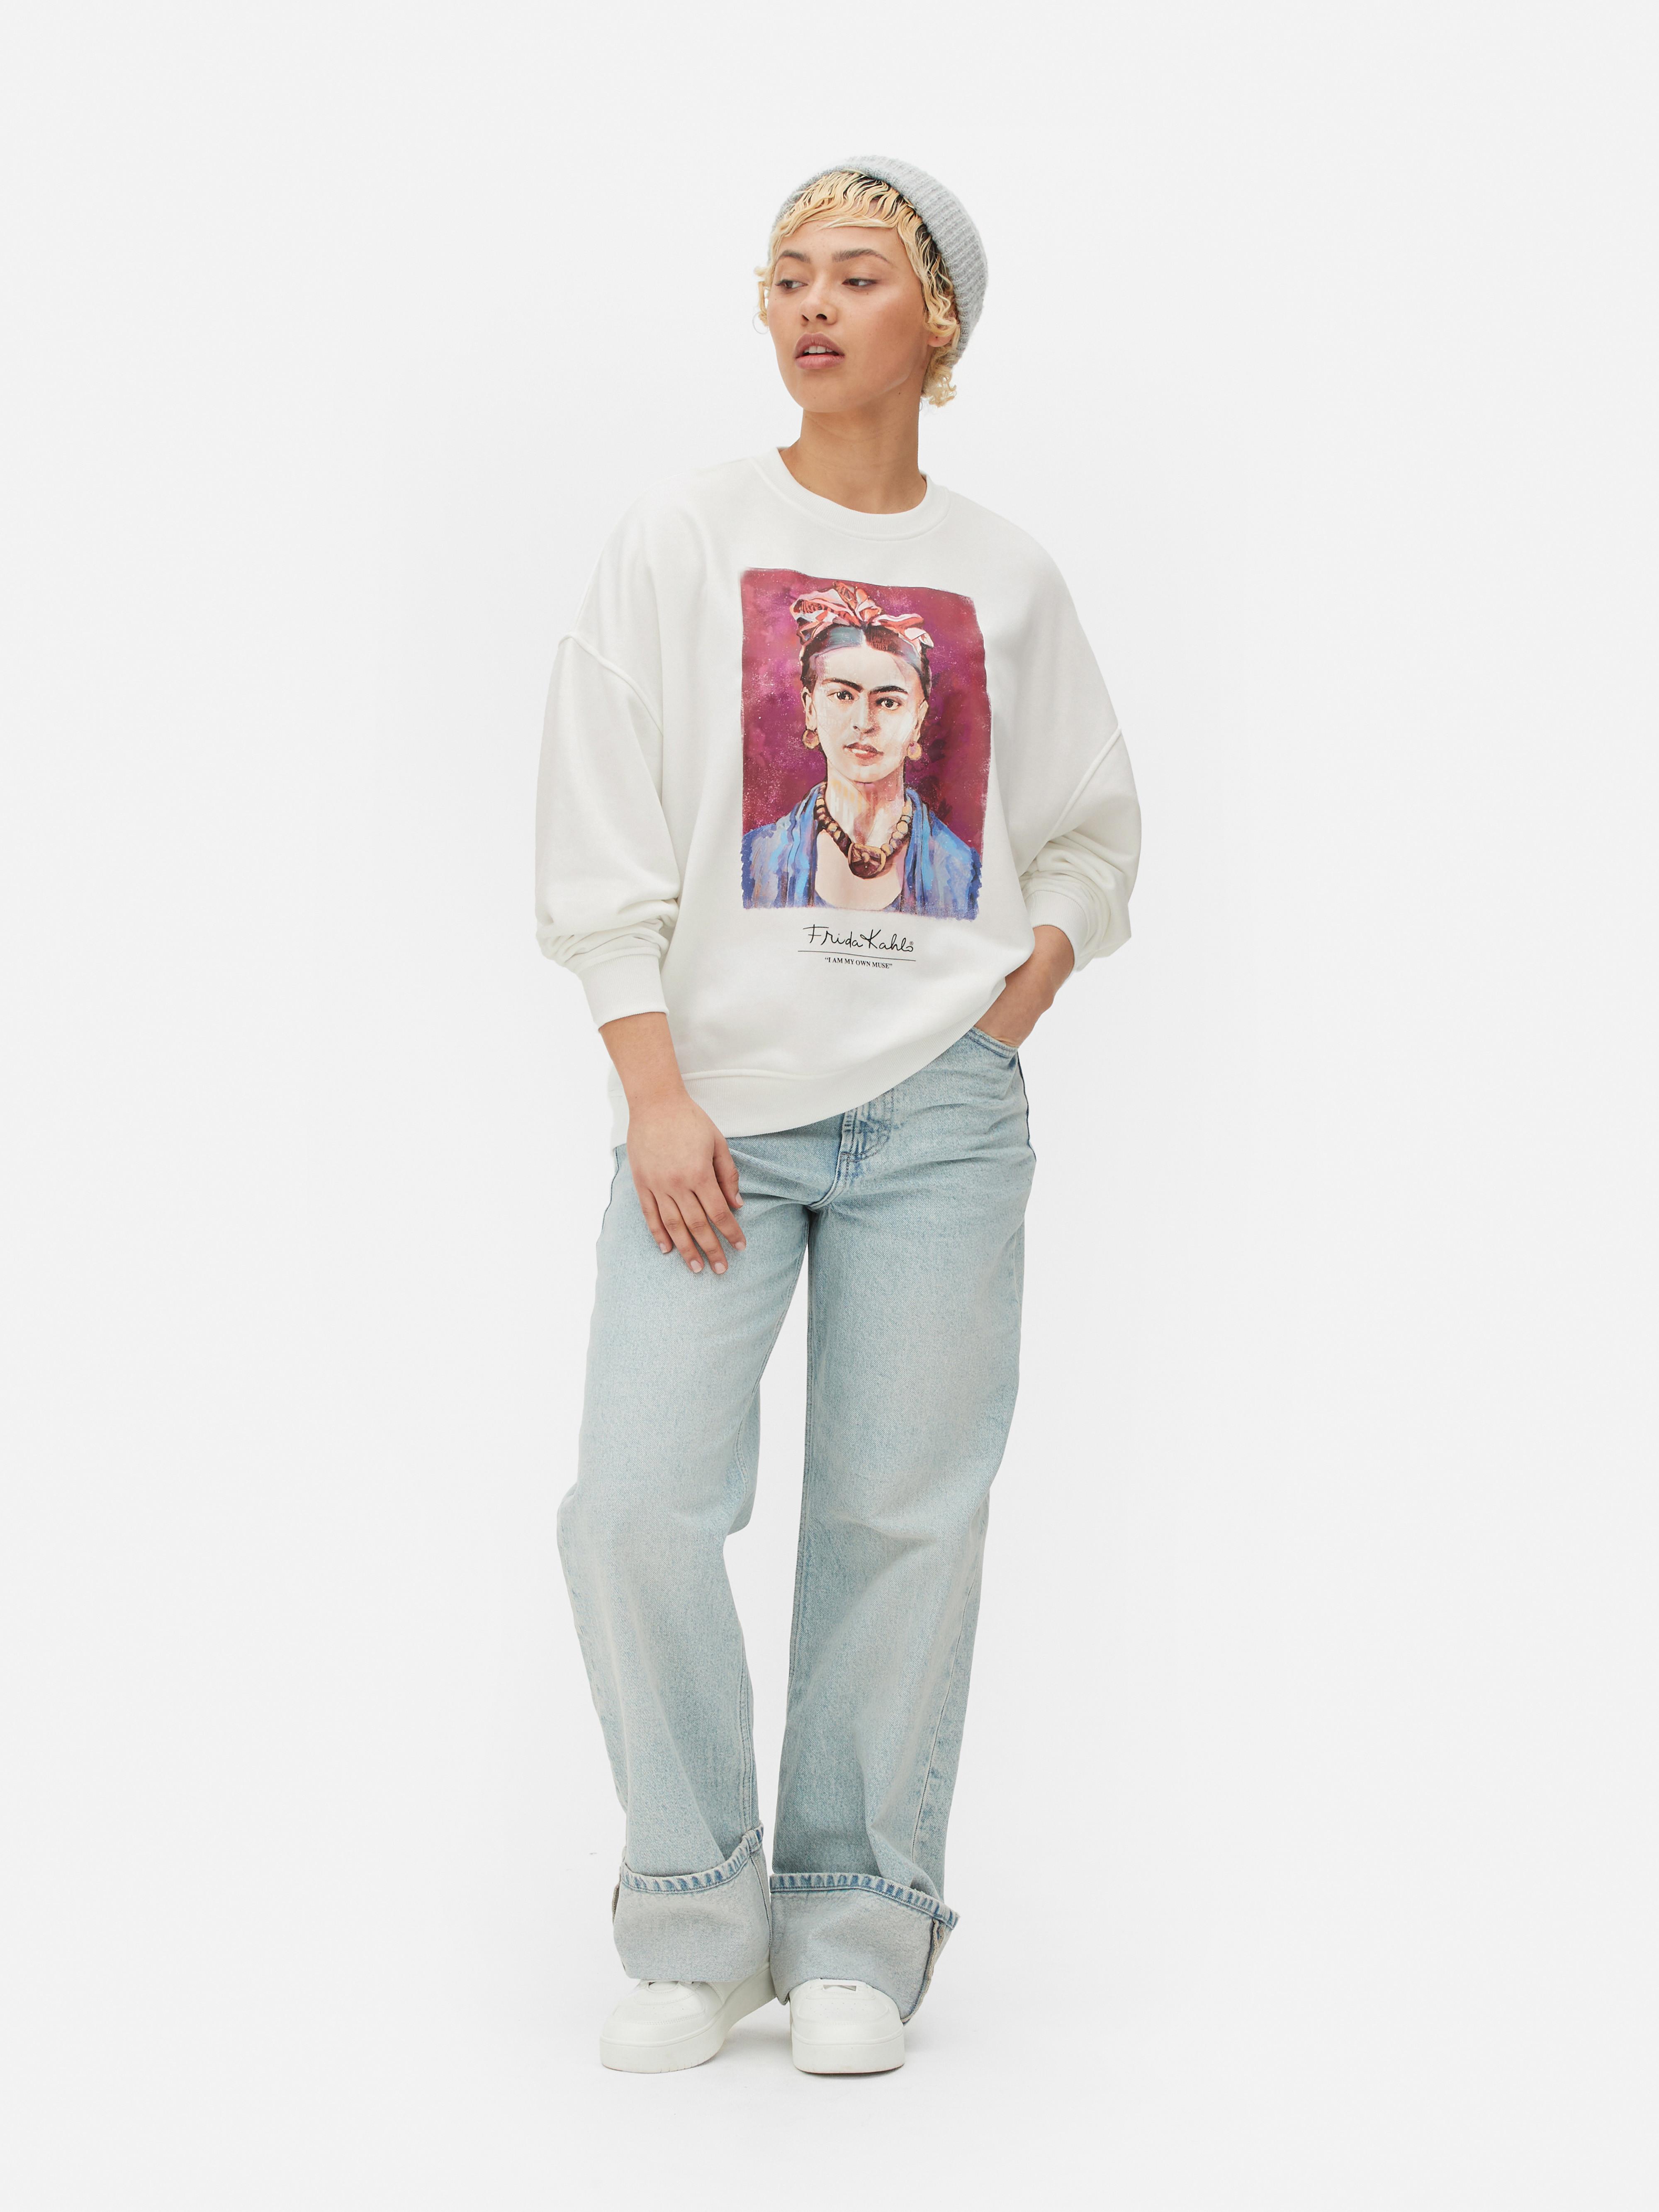 Frida Kahlo Oversized Graphic Sweatshirt